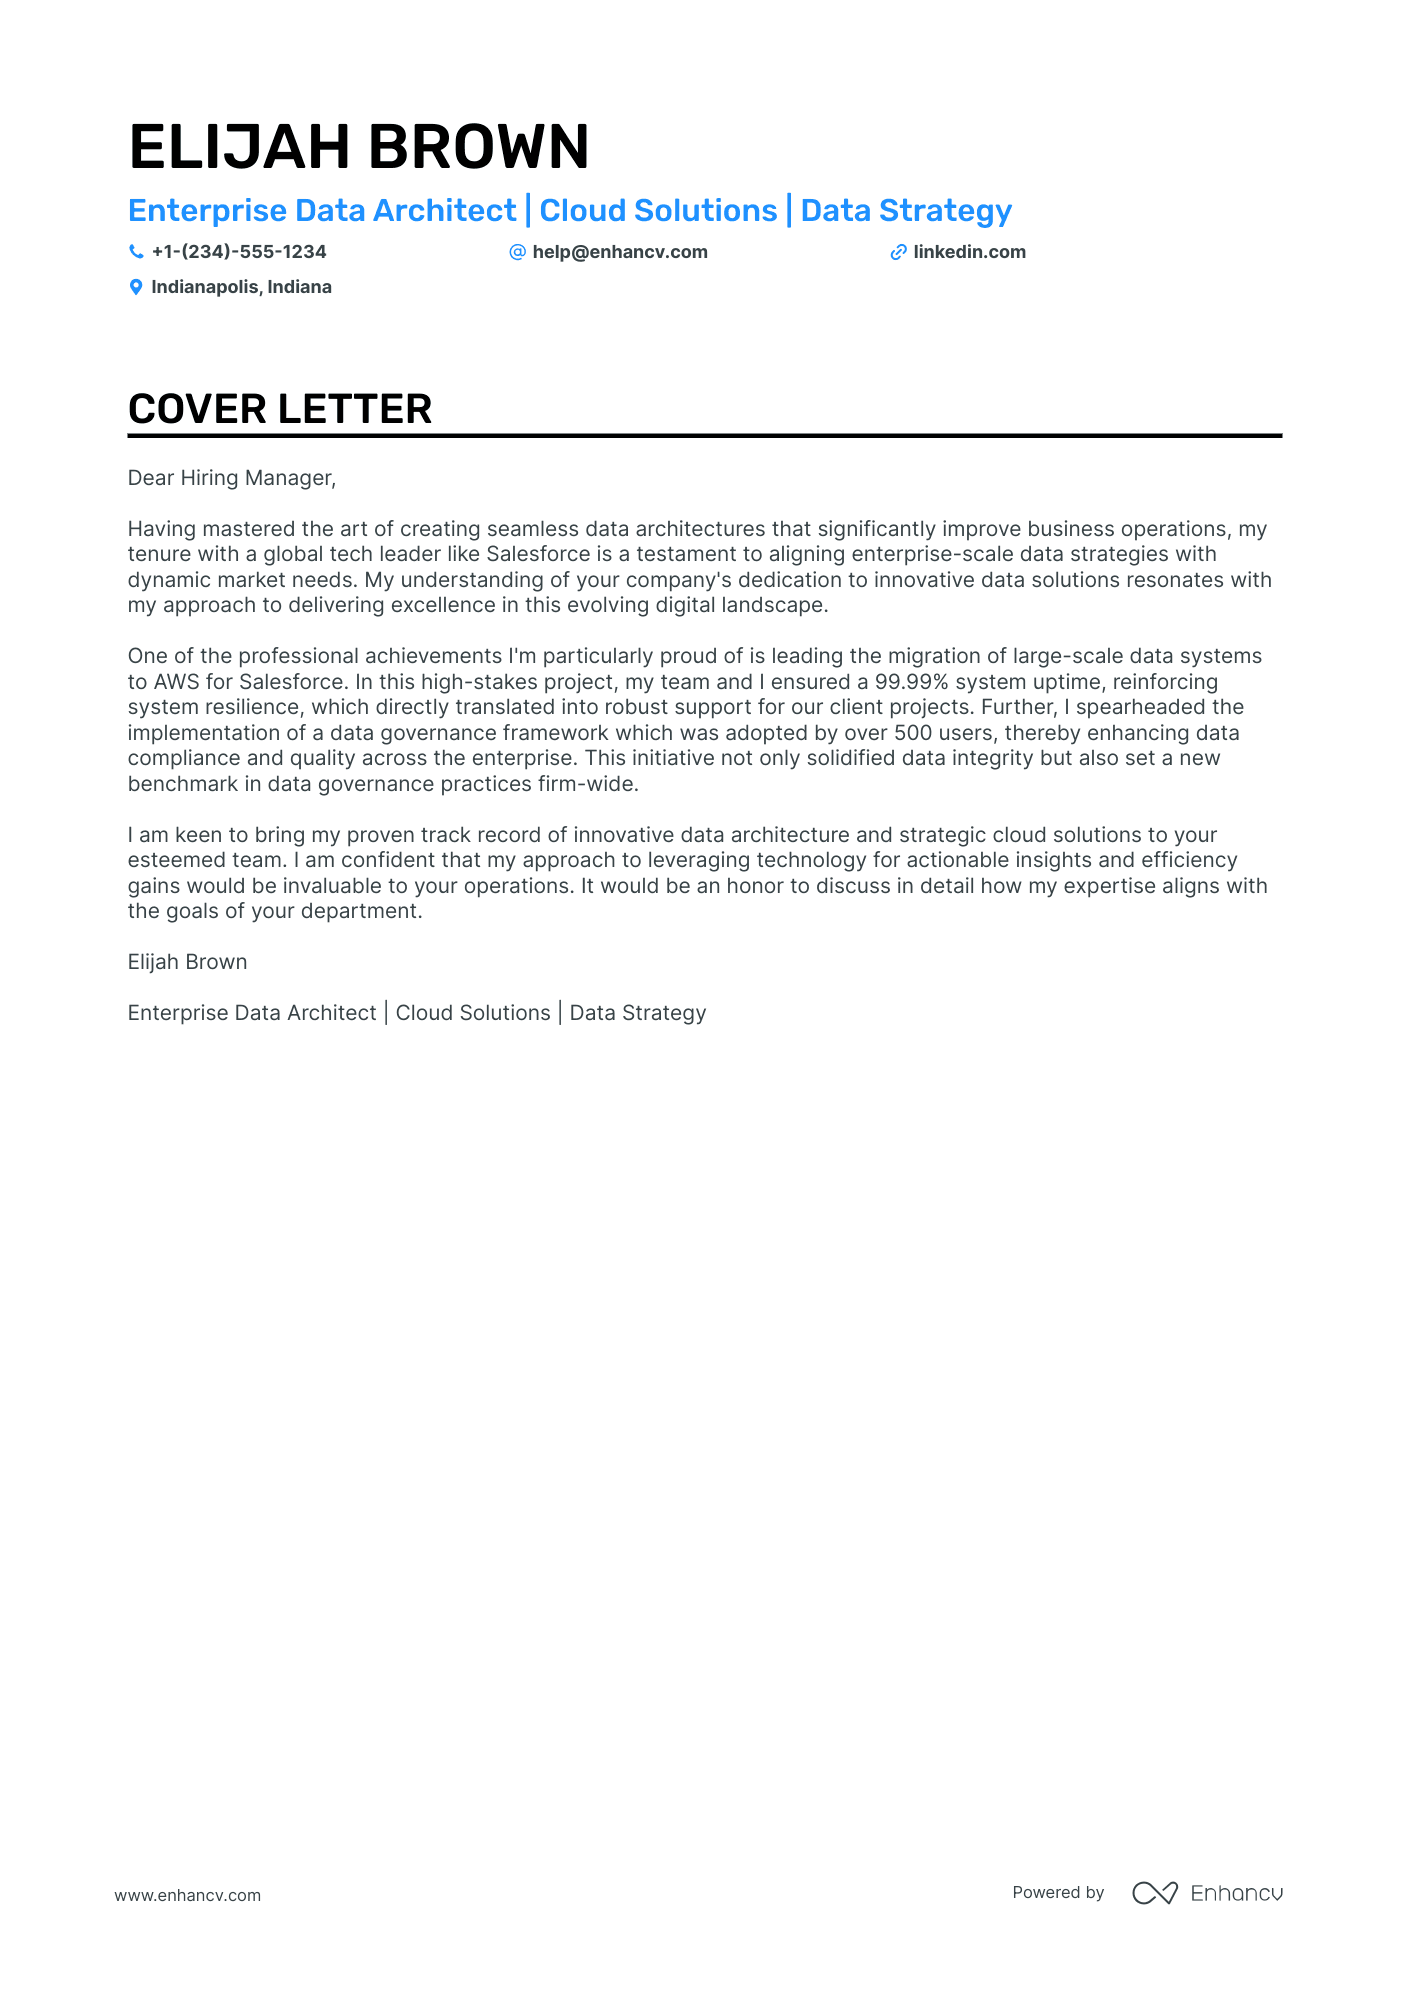 Enterprise Data Architect cover letter